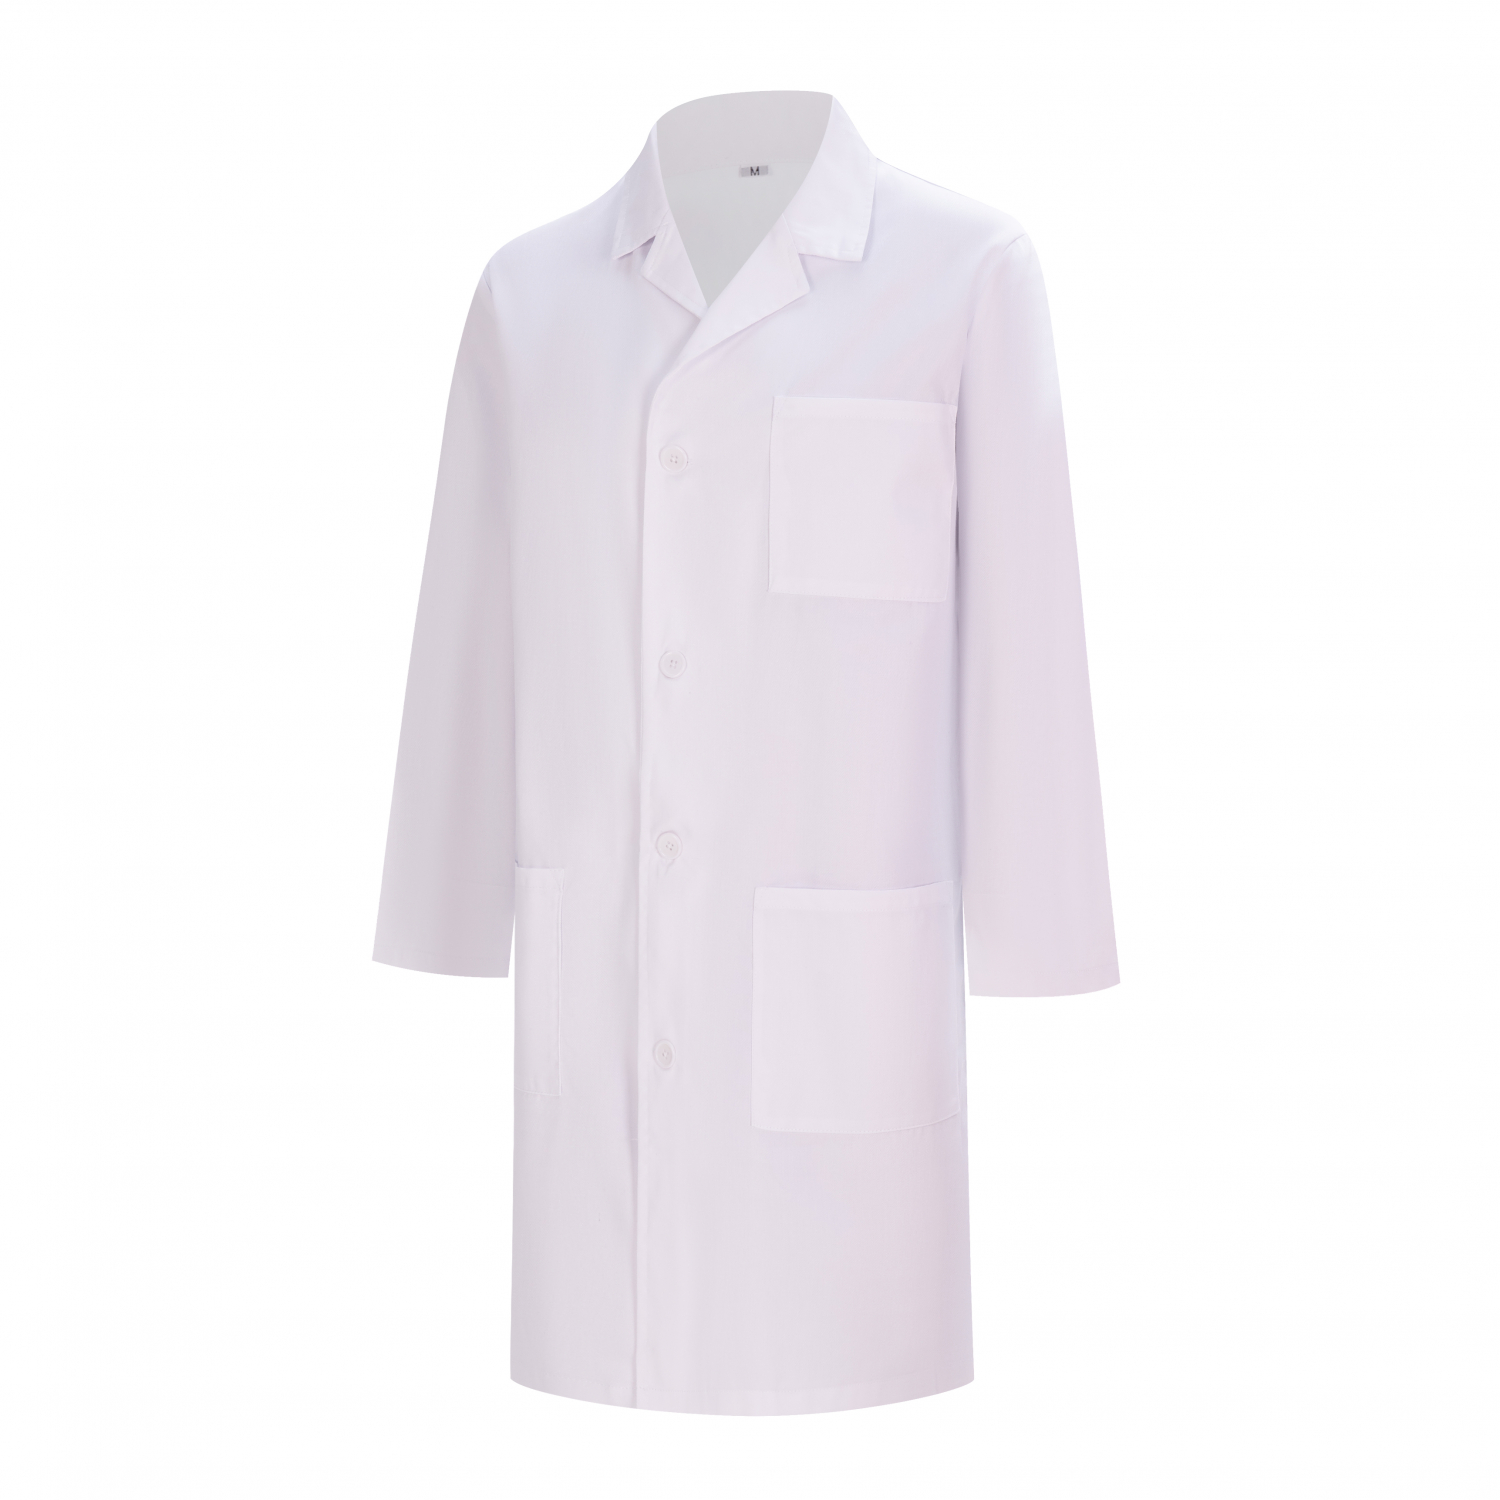 camice bianco da laboratorio donna - camice per laboratorio di chimica donna - camice da laboratorio donna - camice medico 8166